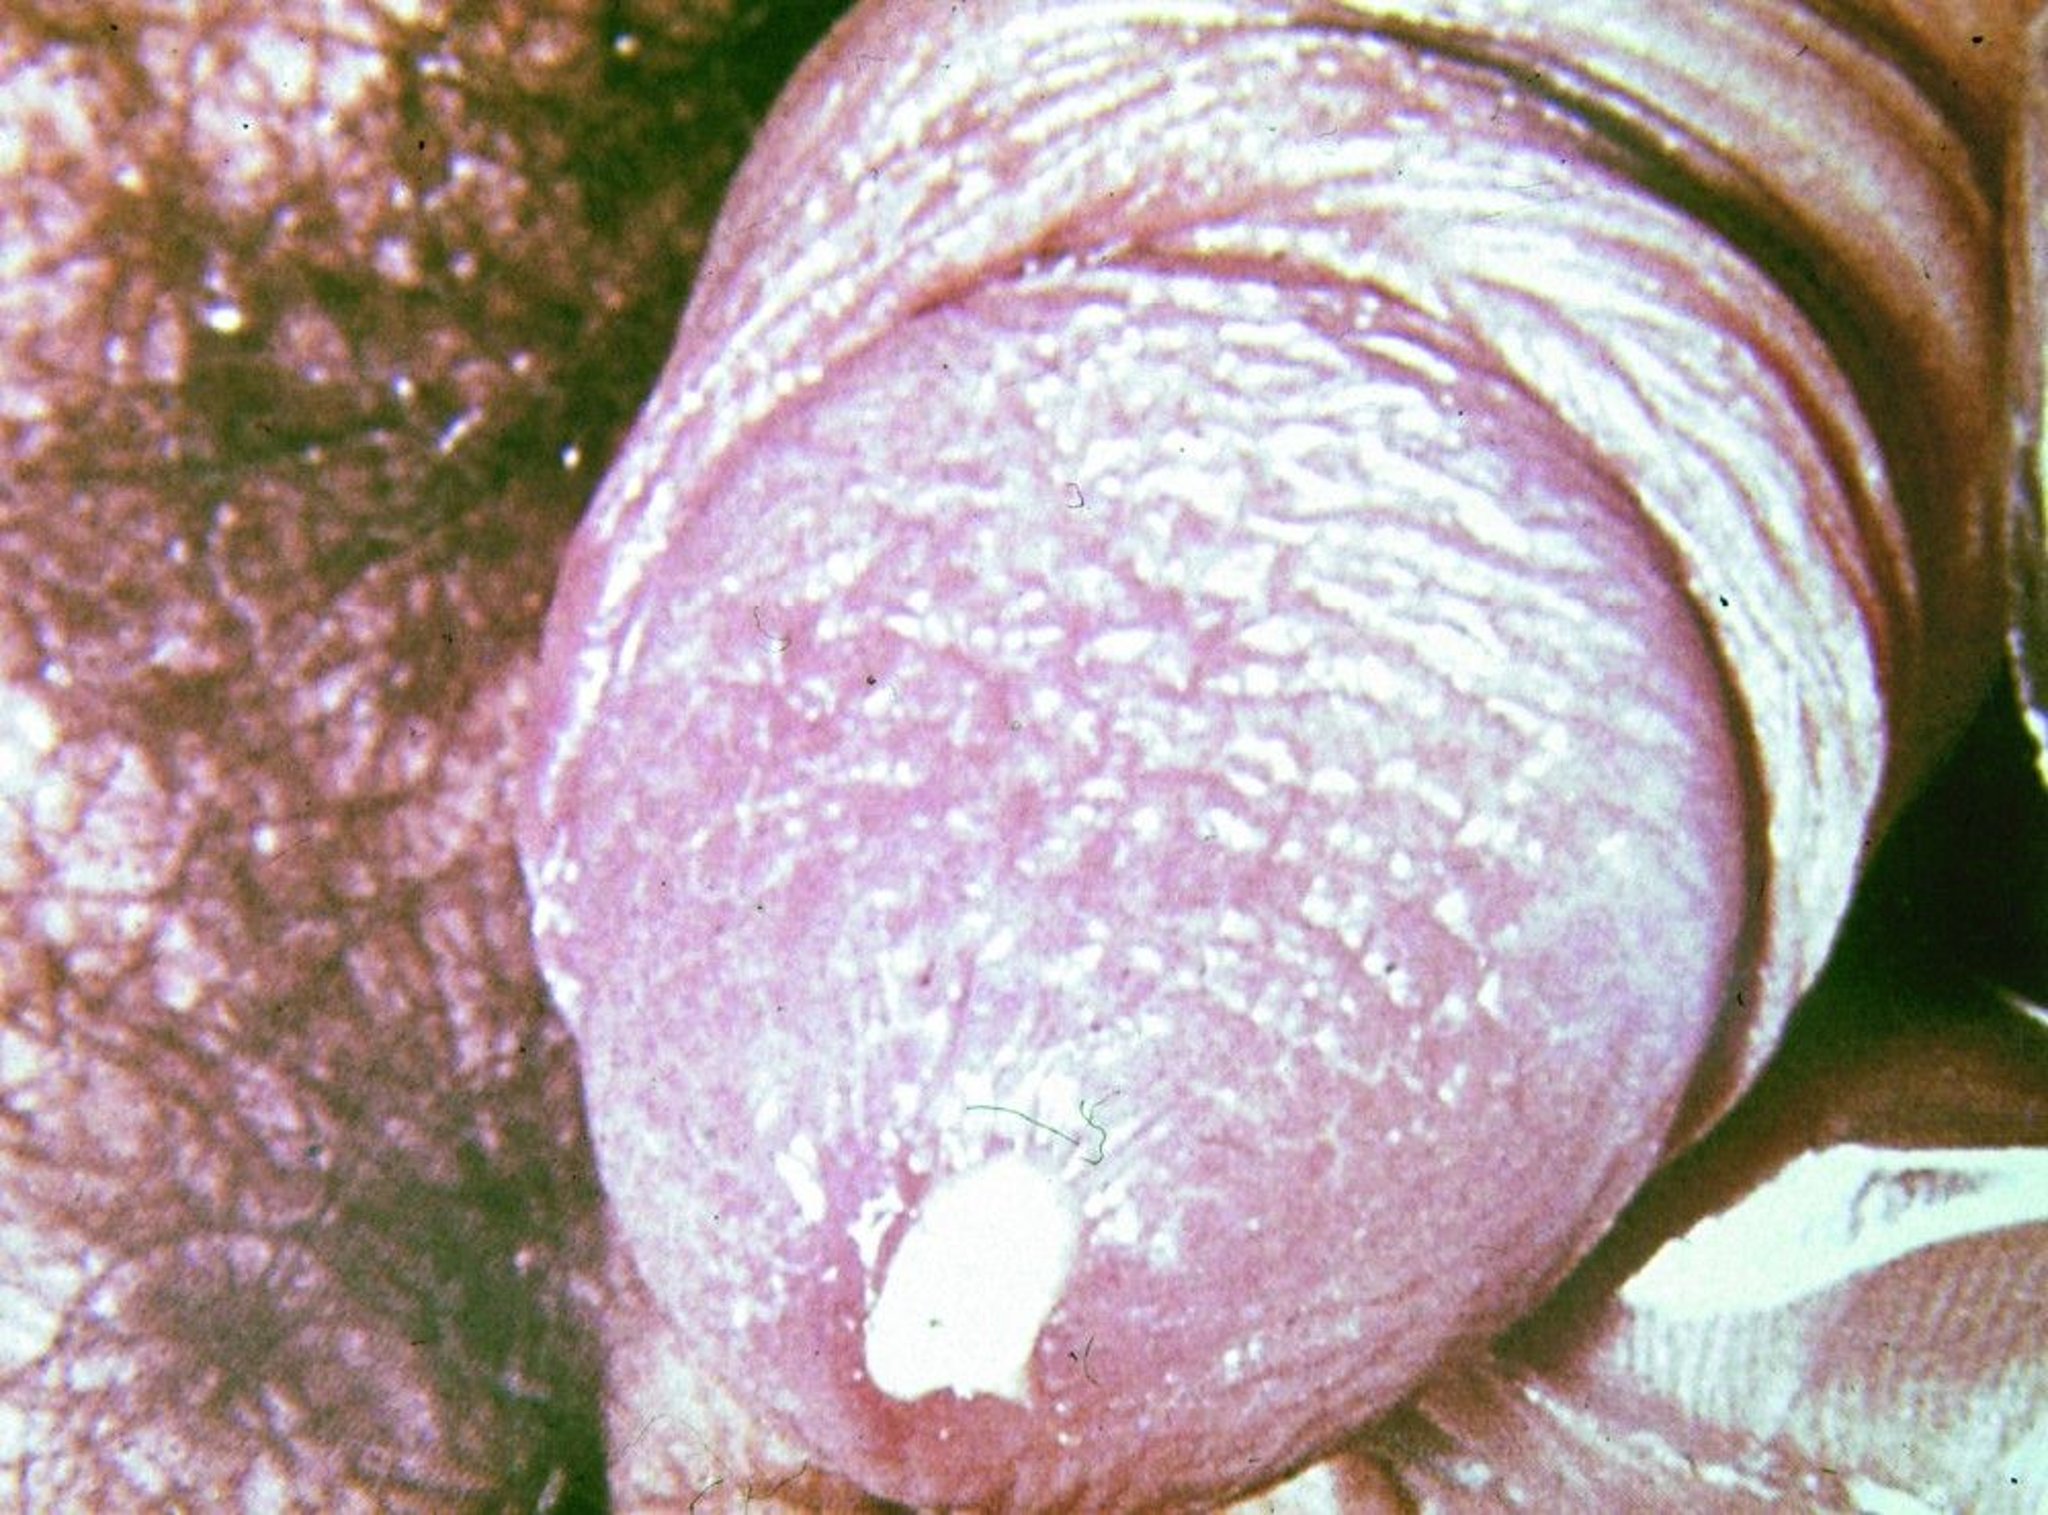 Gonorrhea (Urethritis)